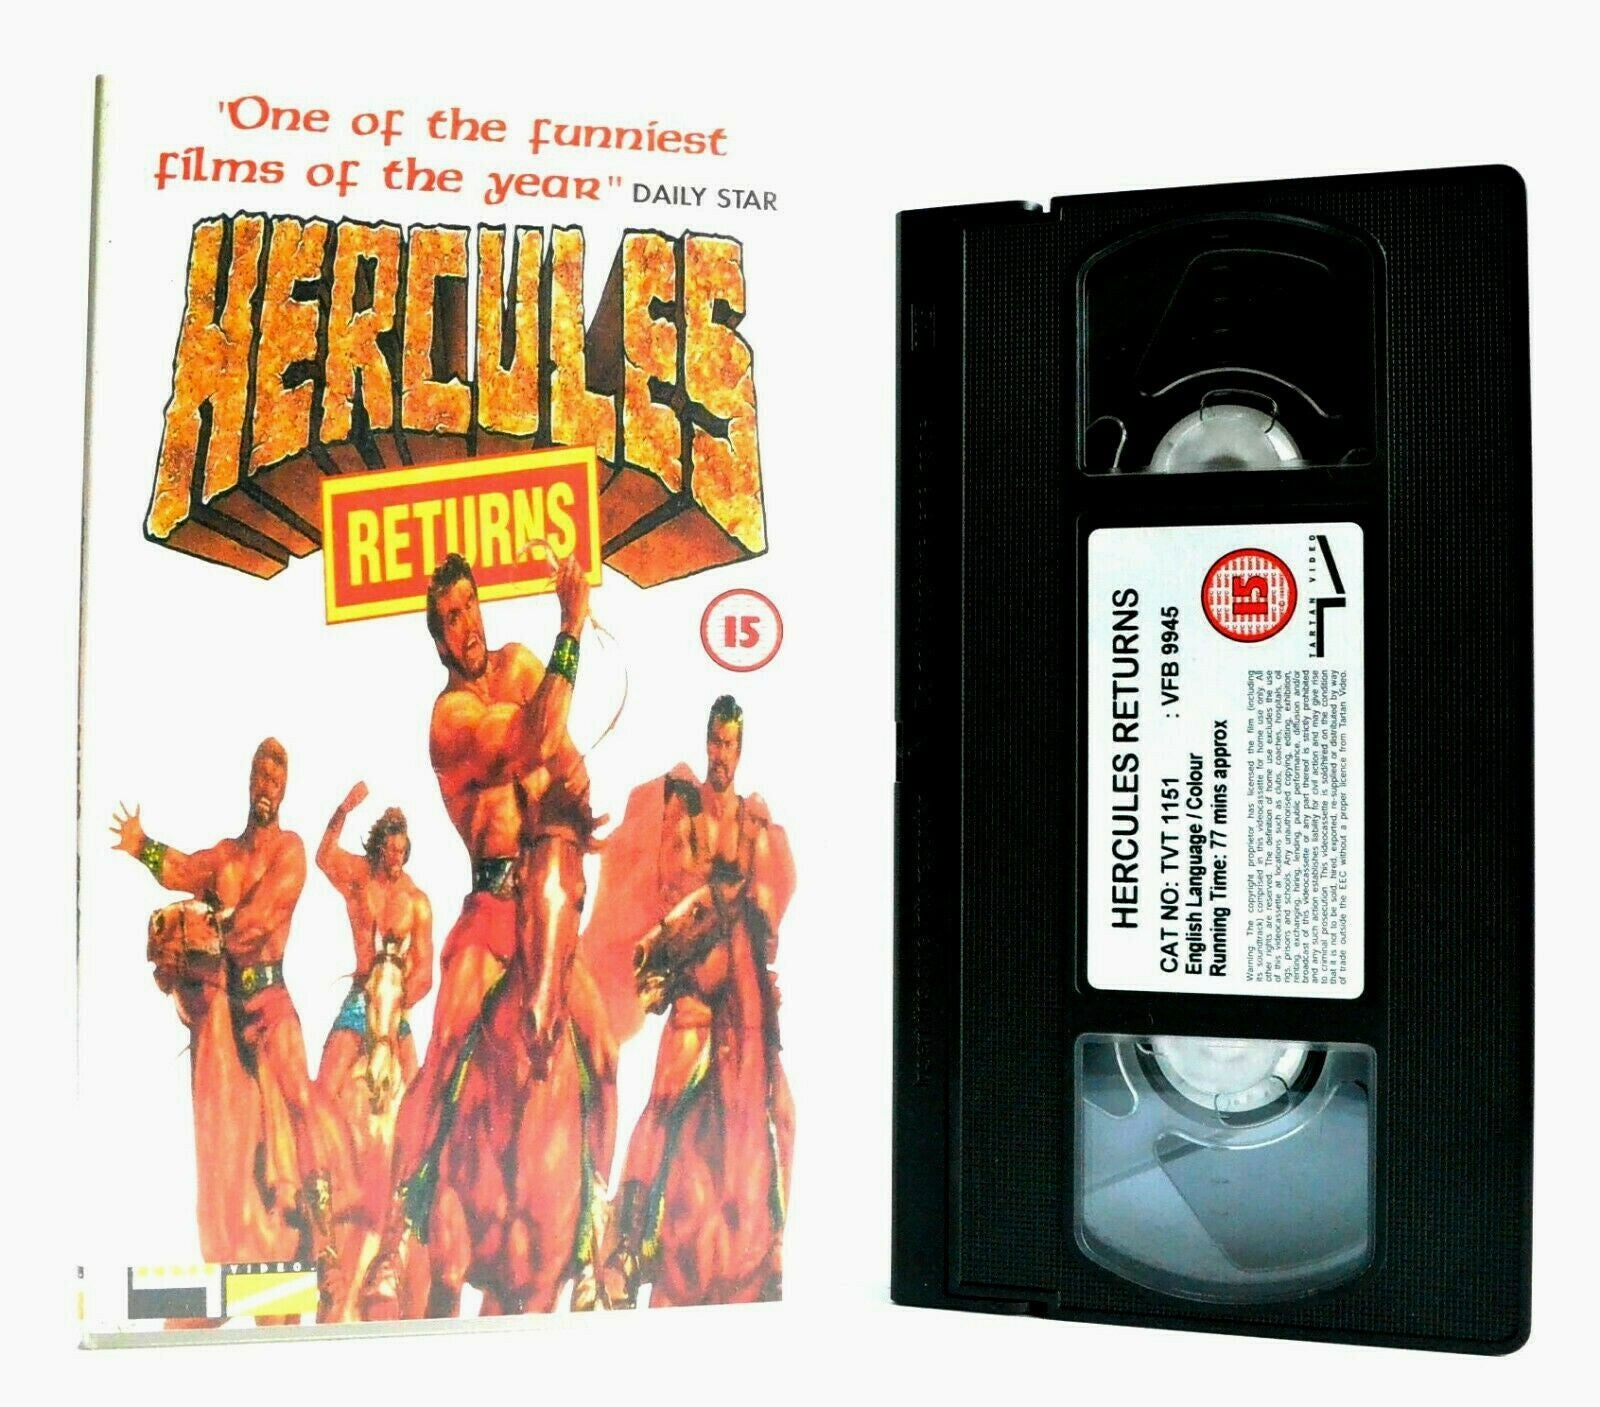 Hercules Returns: Australian Comedy (1993) - Film By D.Parker - D.Argue - VHS-